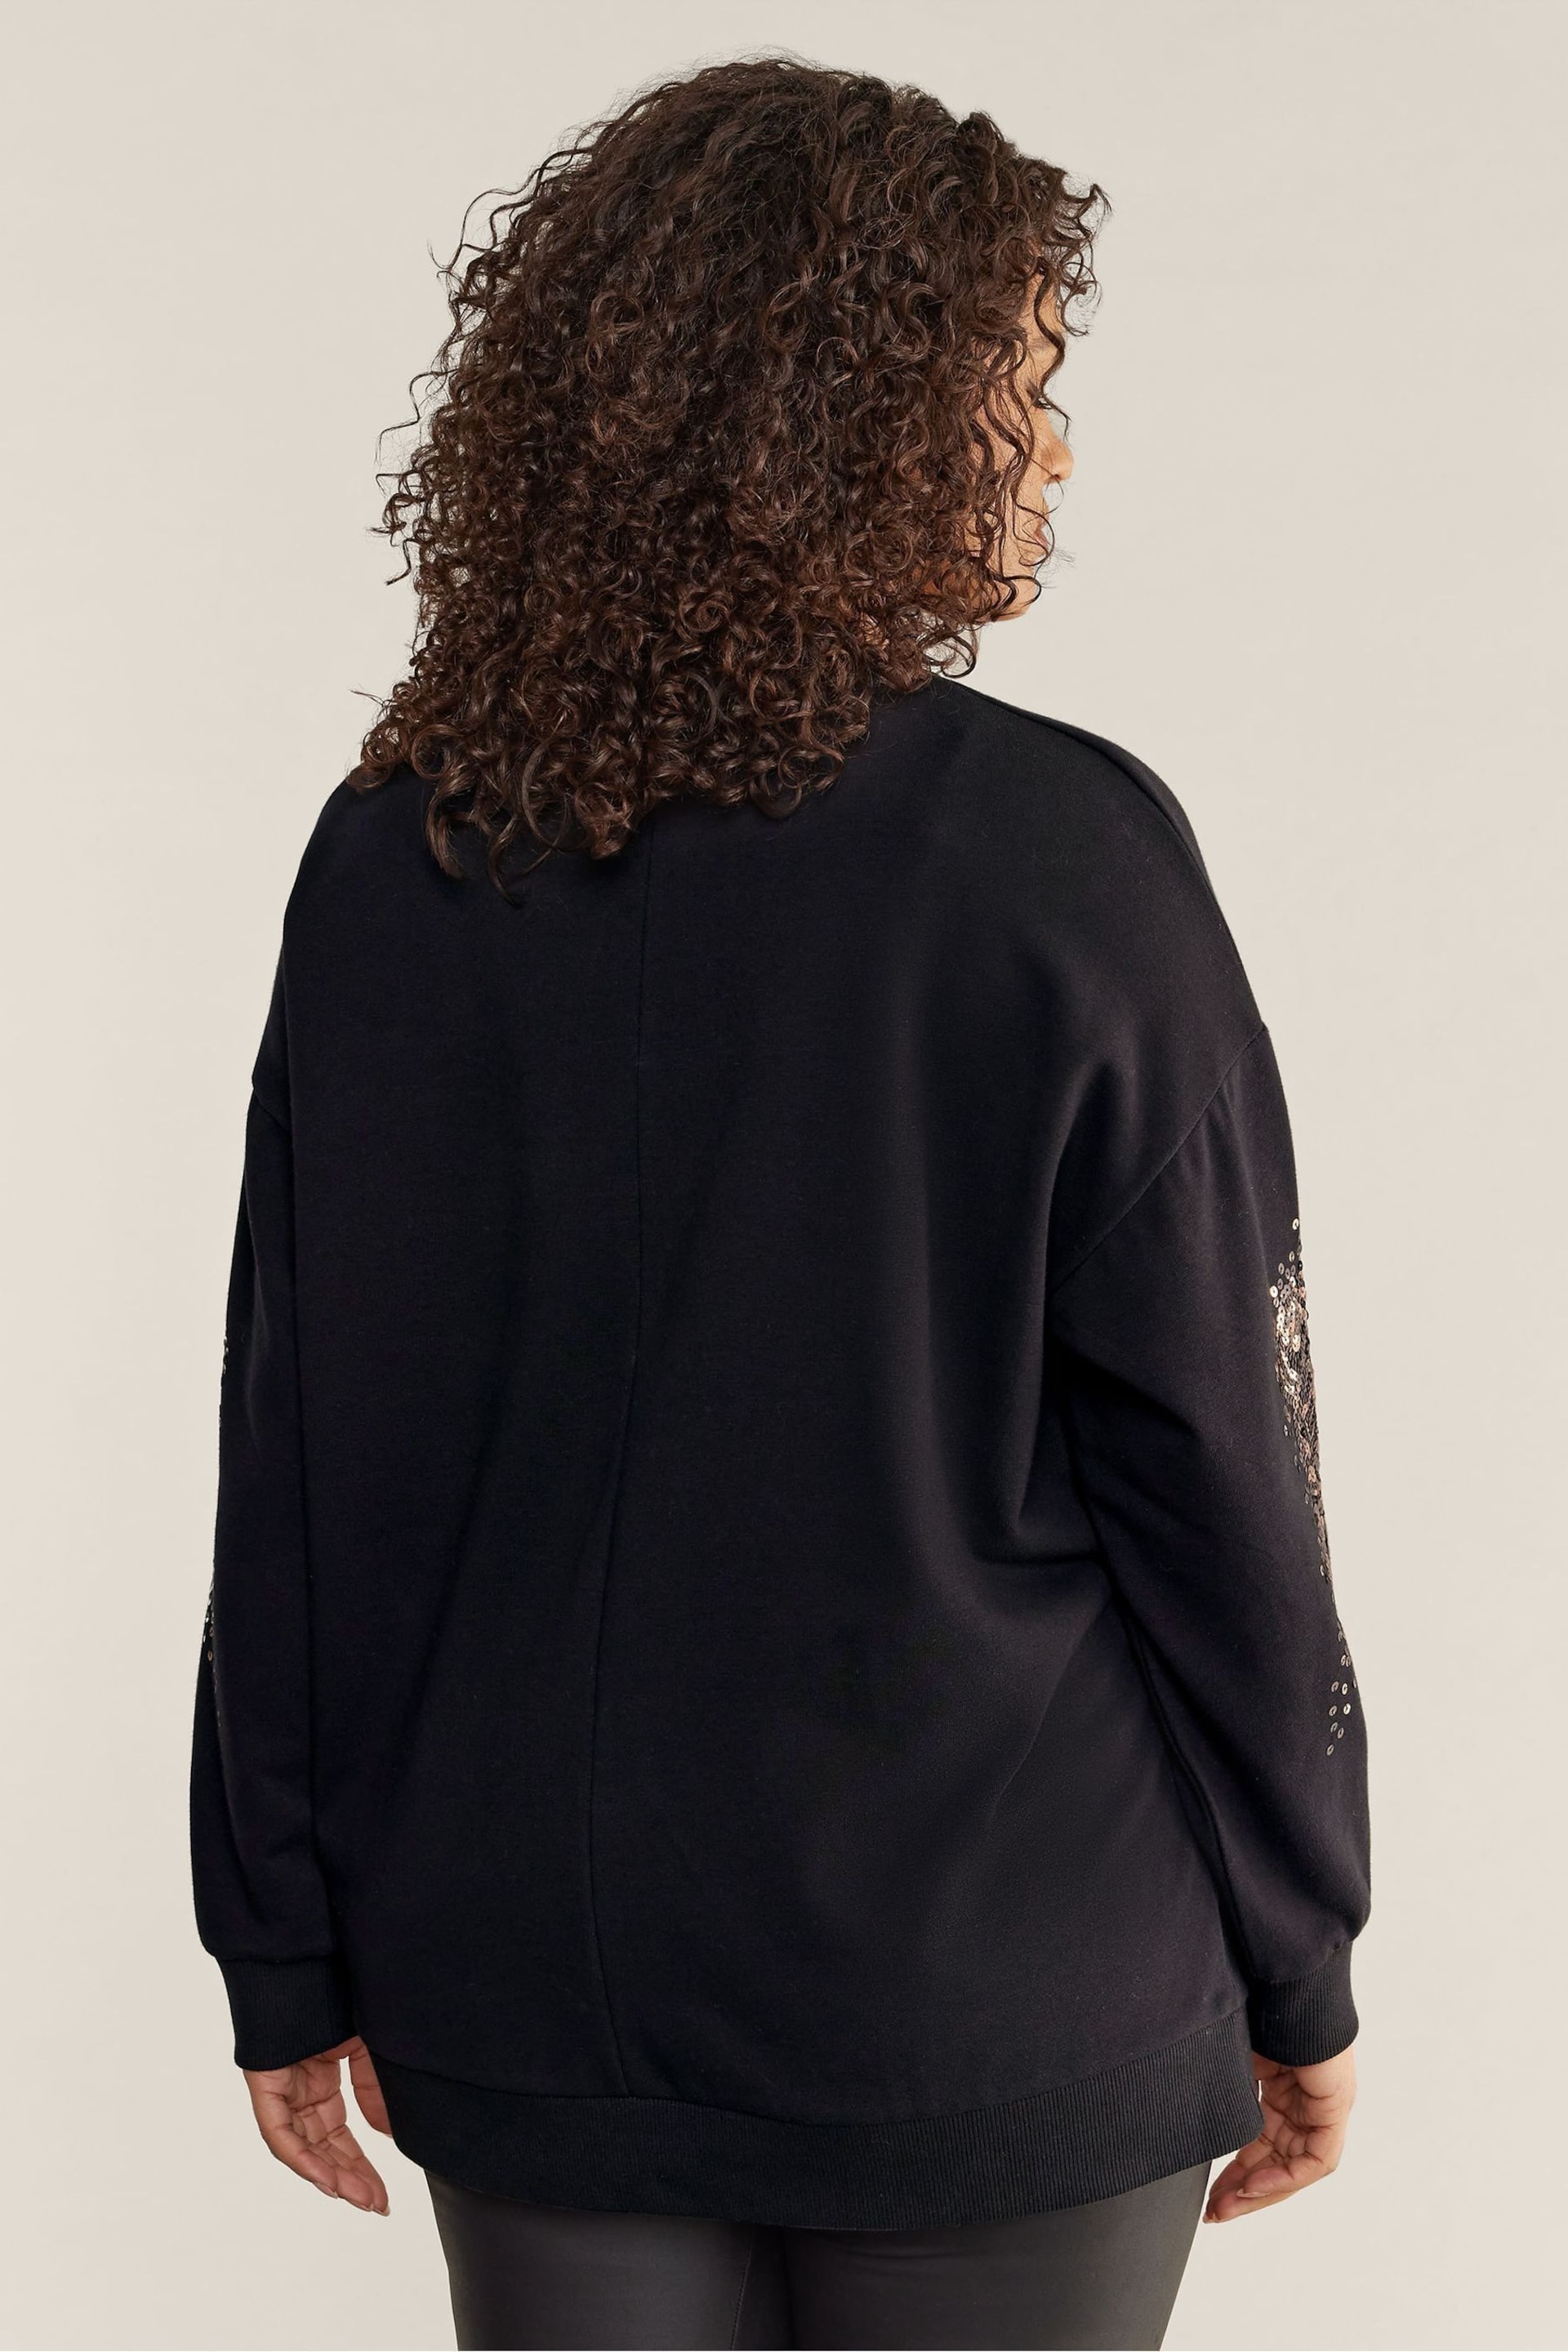 Evans Sequin Black Sweatshirt - Image 3 of 4